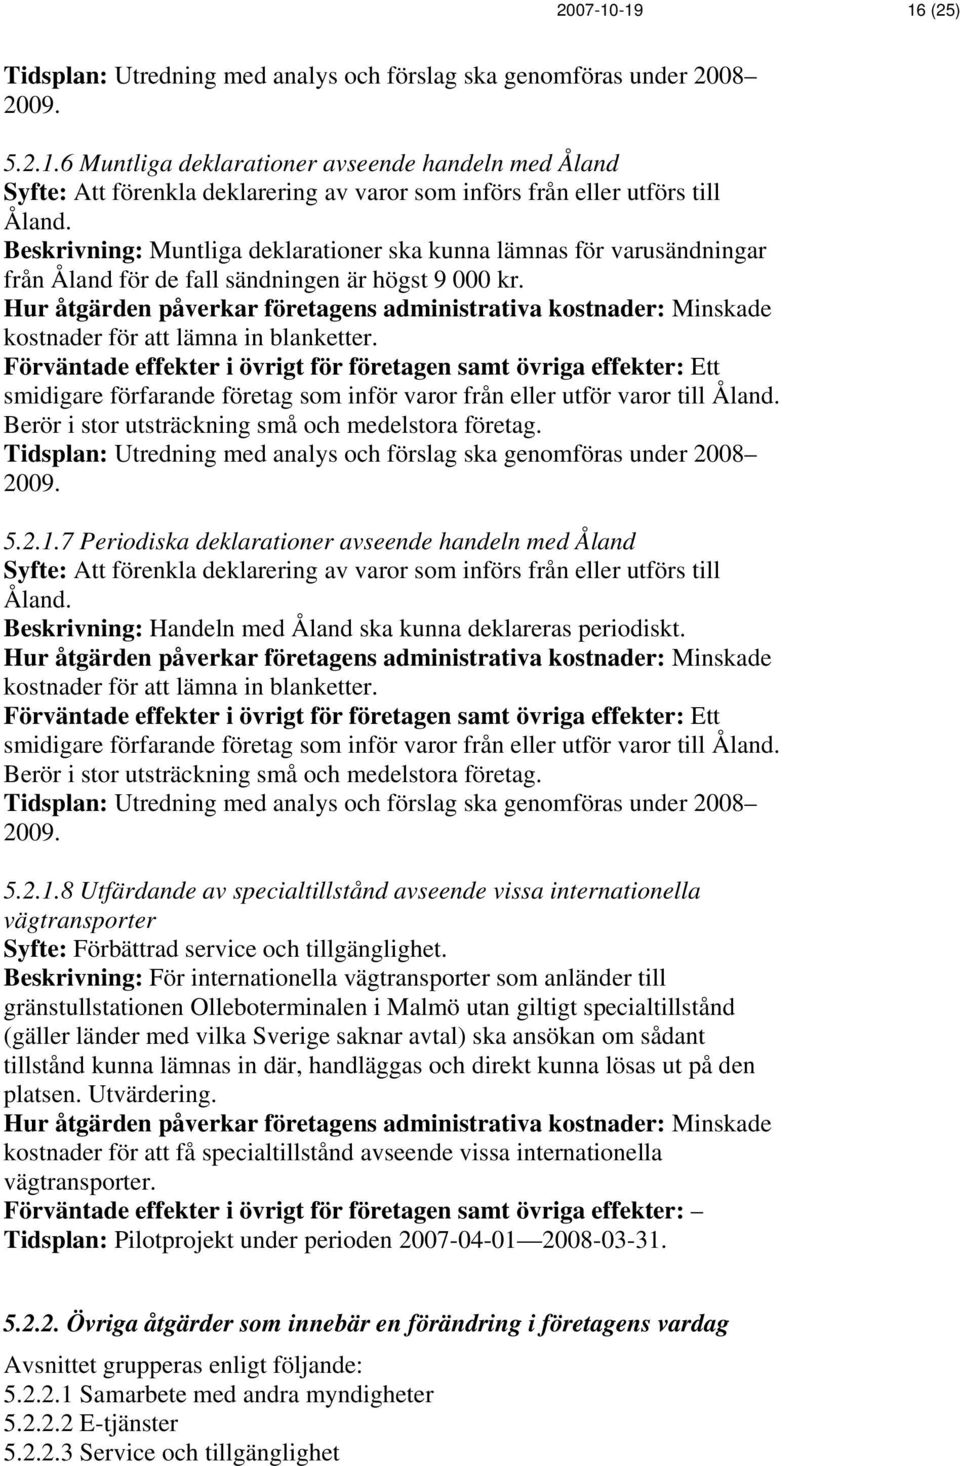 Ett smidigare förfarande företag som inför varor från eller utför varor till Åland. Berör i stor utsträckning små och medelstora företag. 5.2.1.